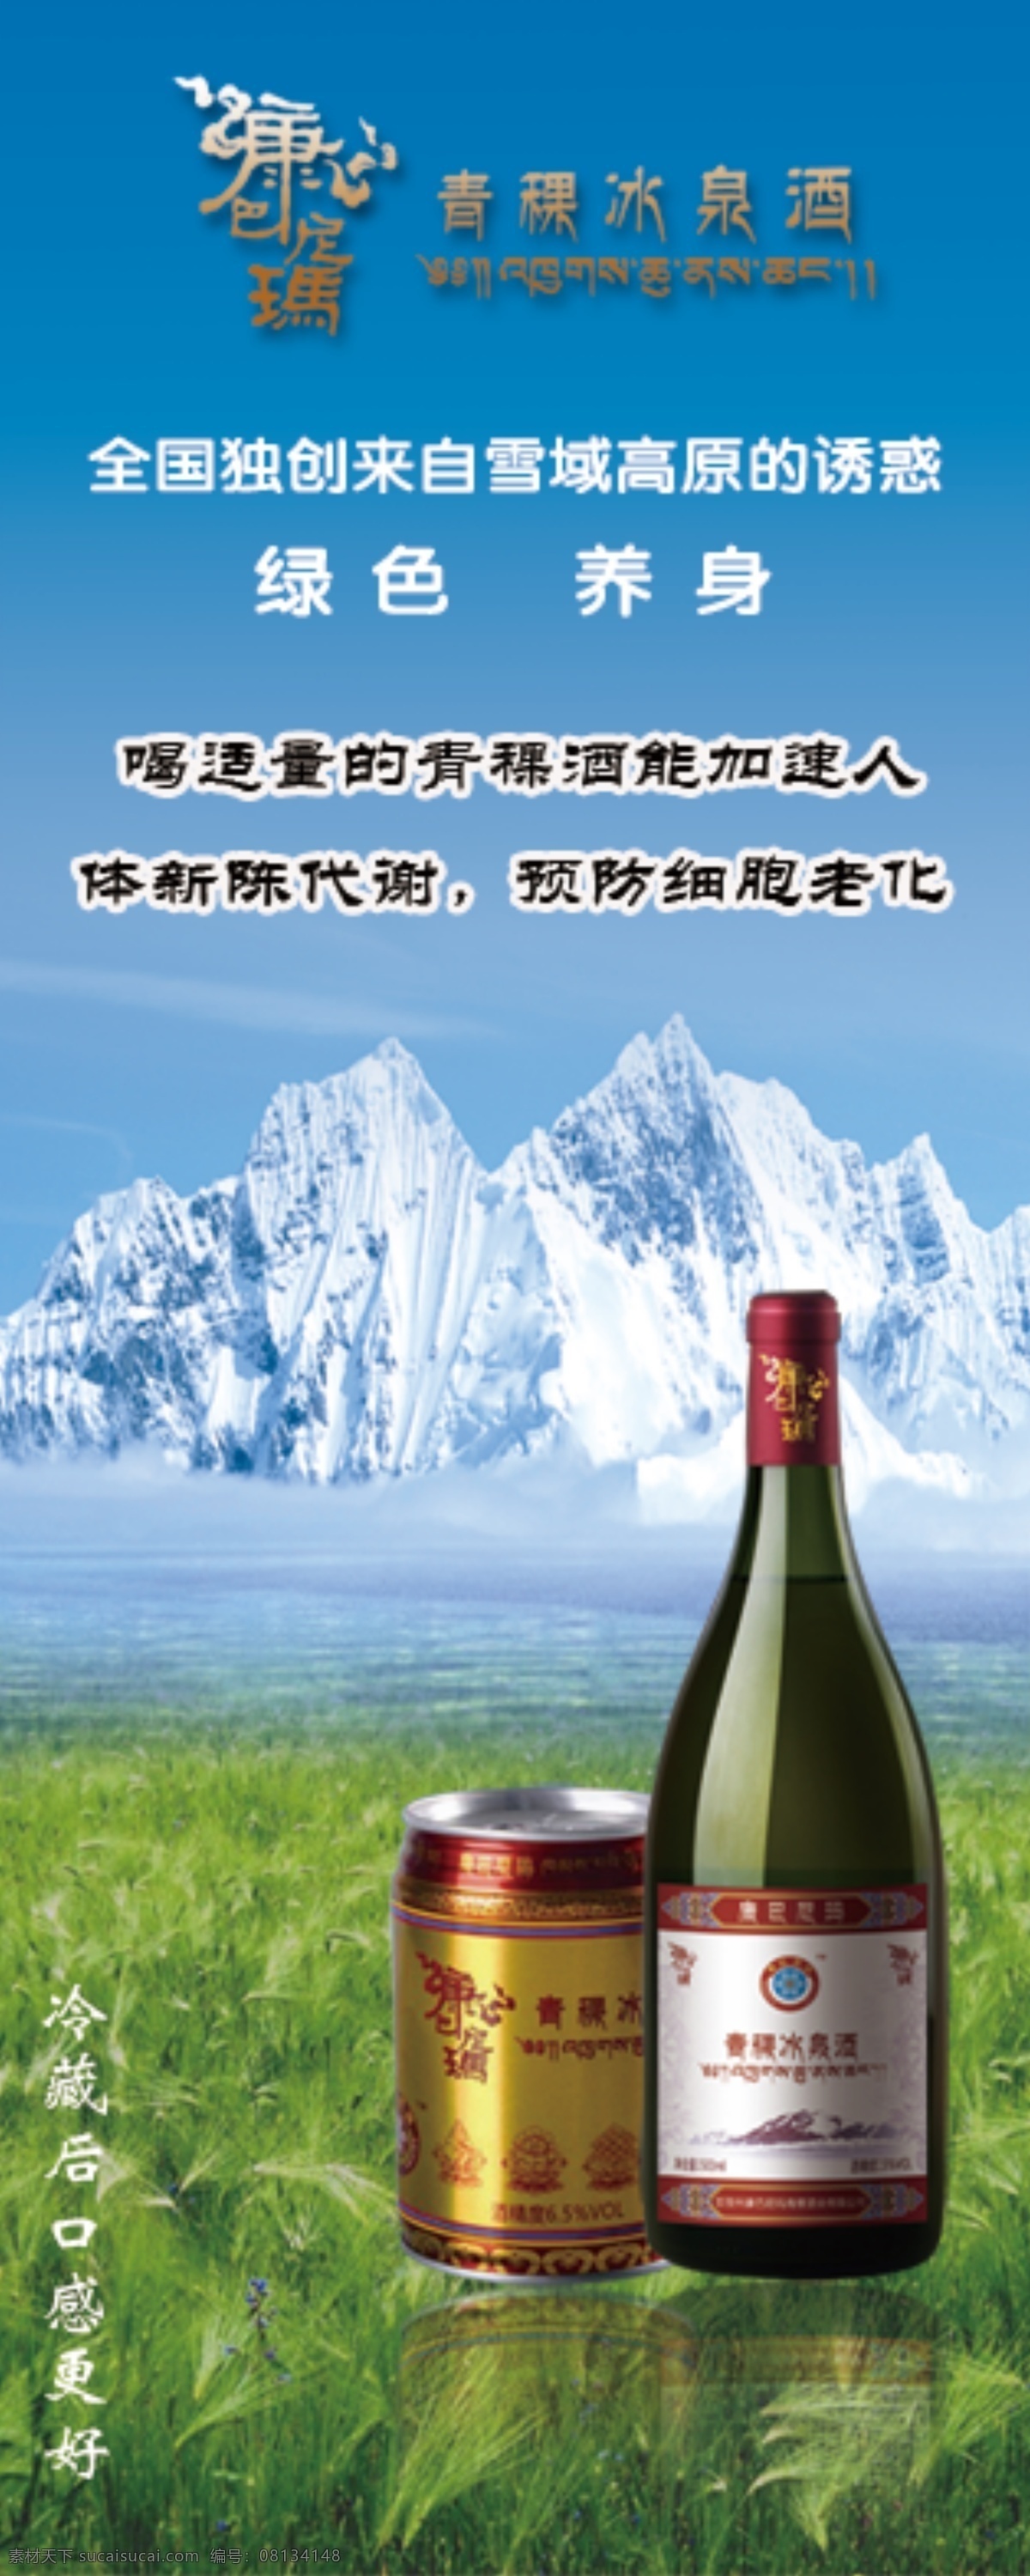 康巴尼玛 青稞酒 冰泉酒 x展架 冰山